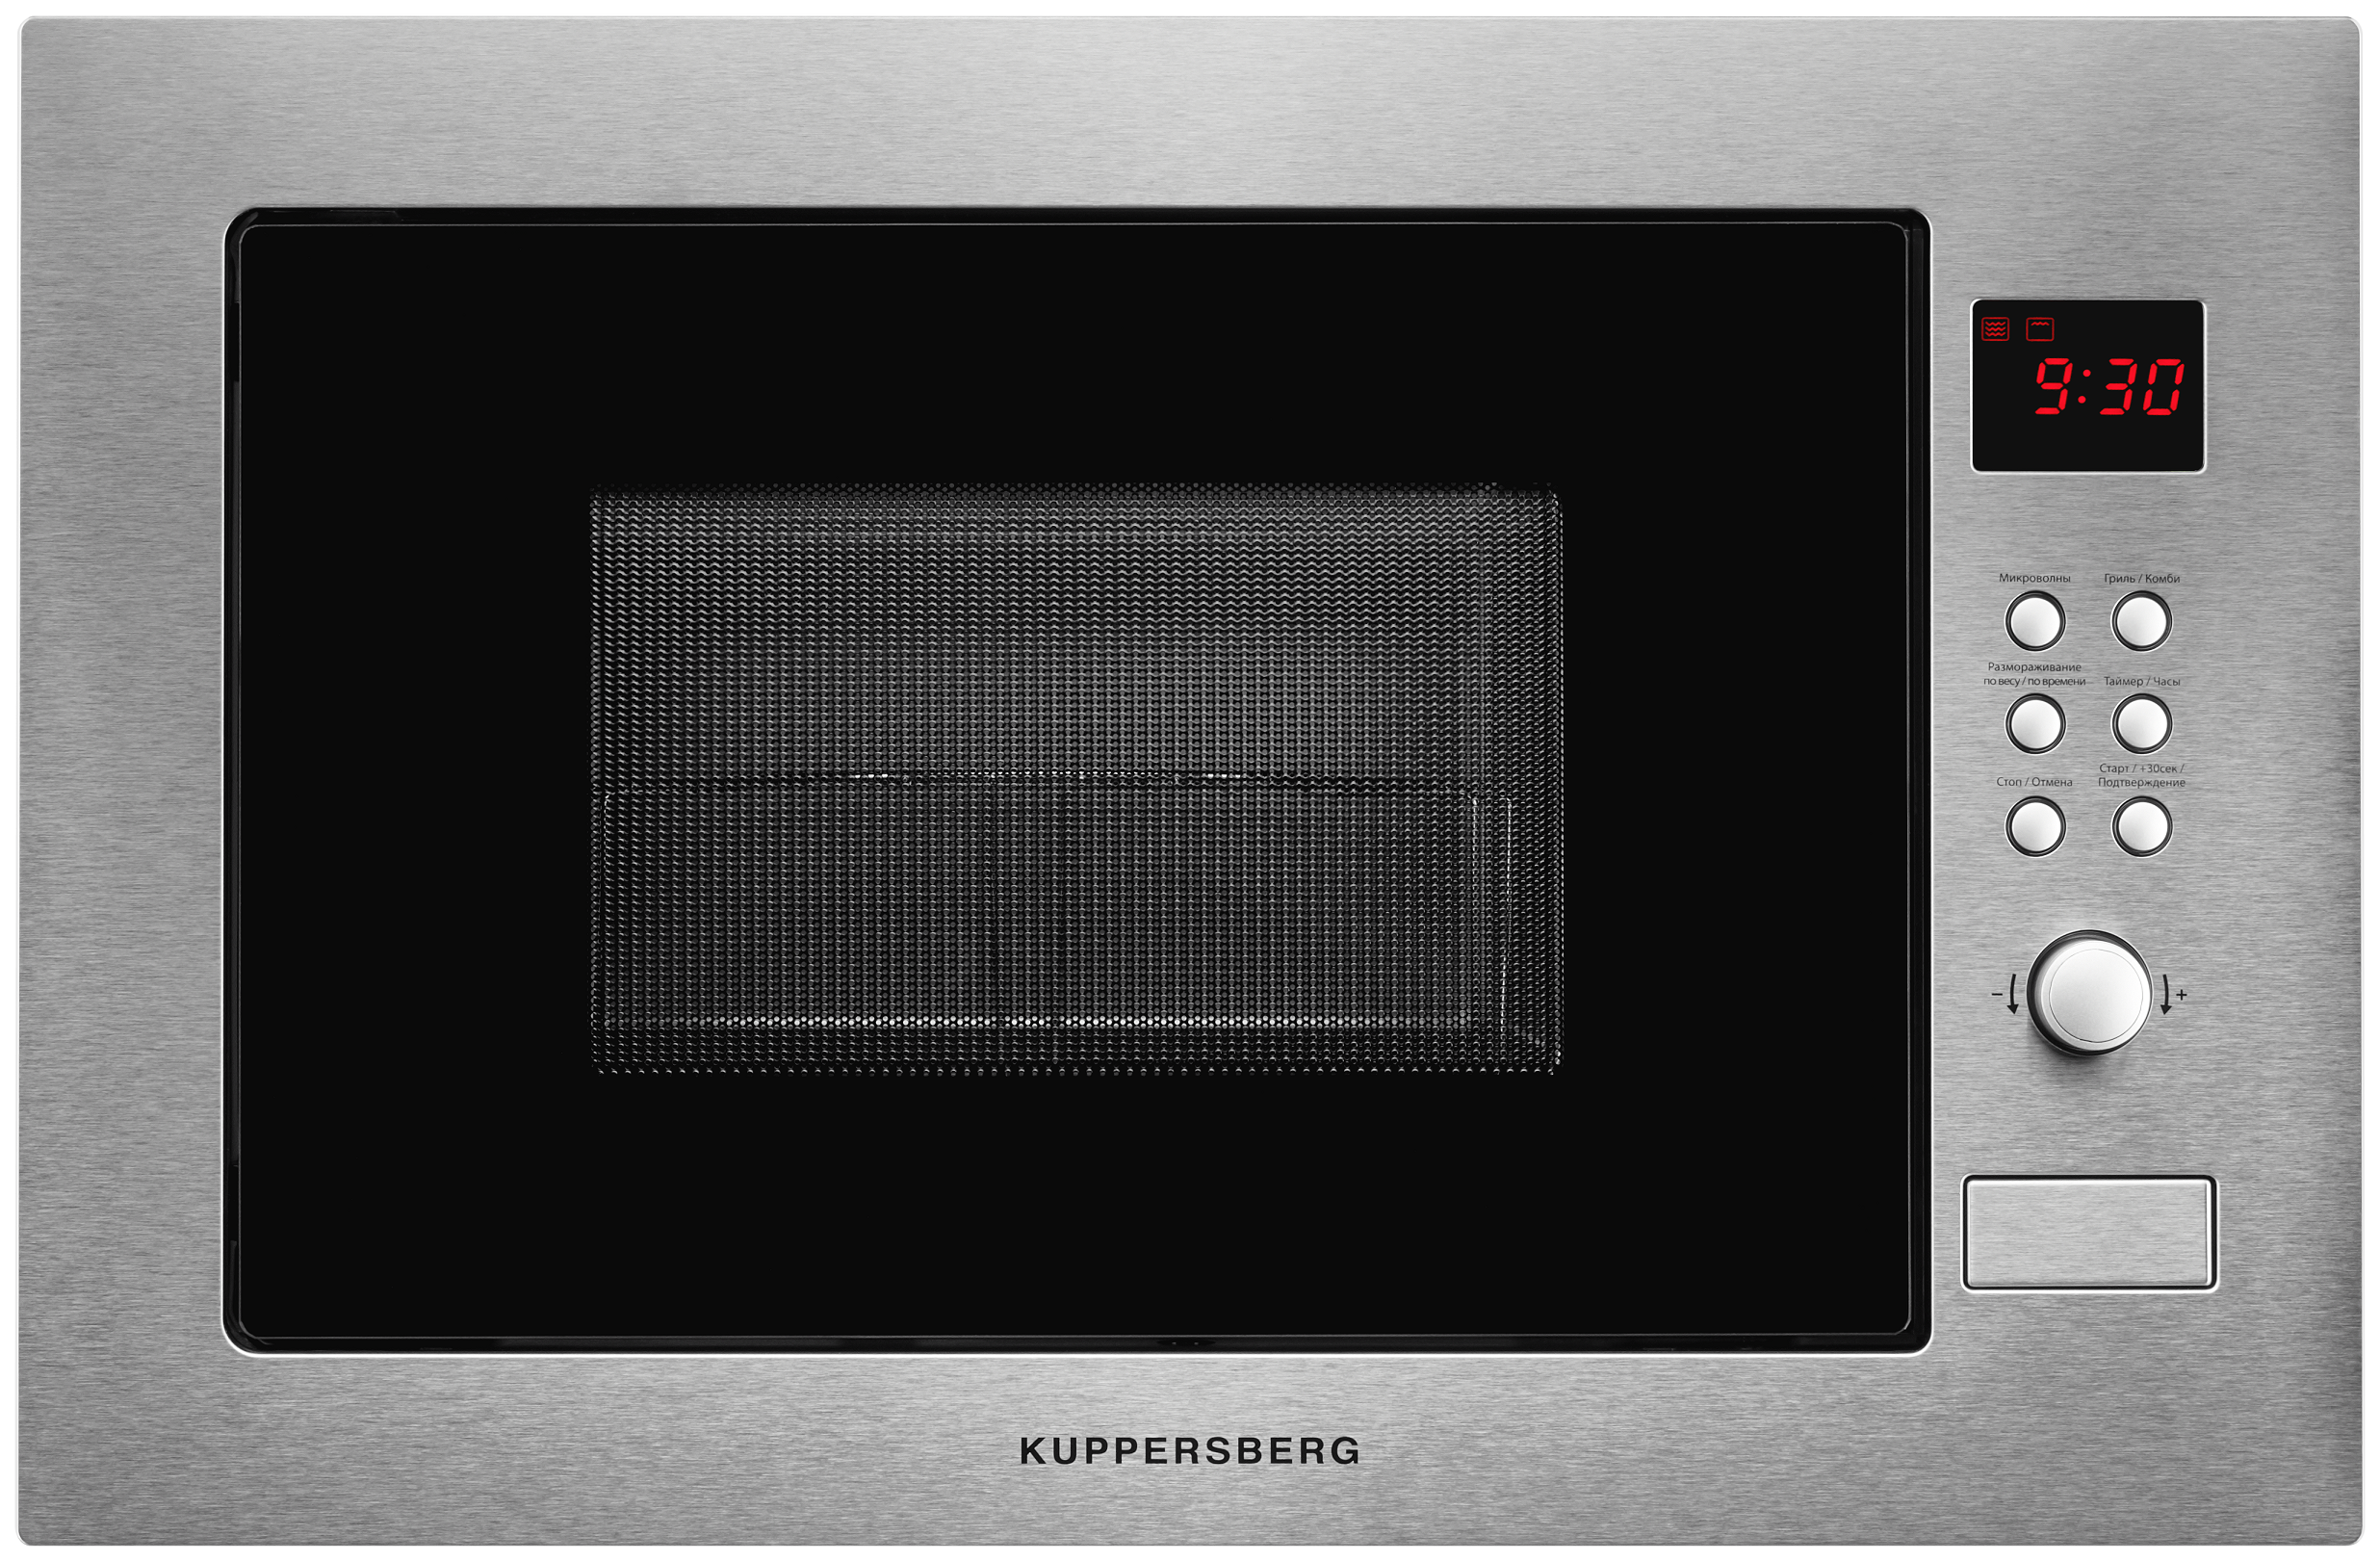 Встраиваемая микроволновая печь KUPPERSBERG HMW 635 серебристая микроволновая печь kuppersberg